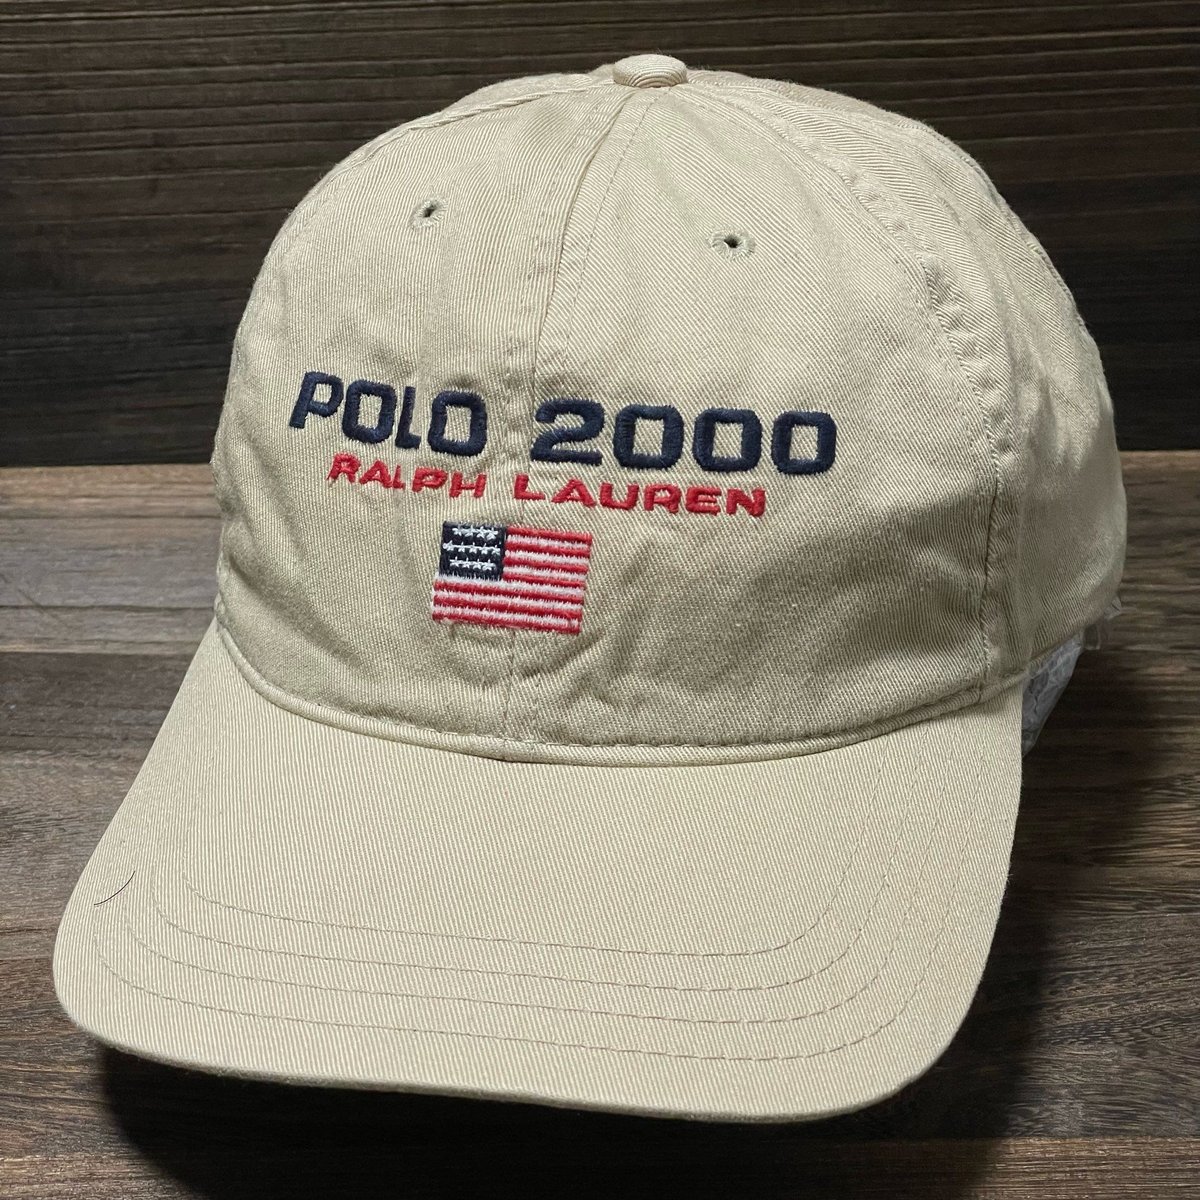 レア! USA製 POLO SPORT CAMP CAP